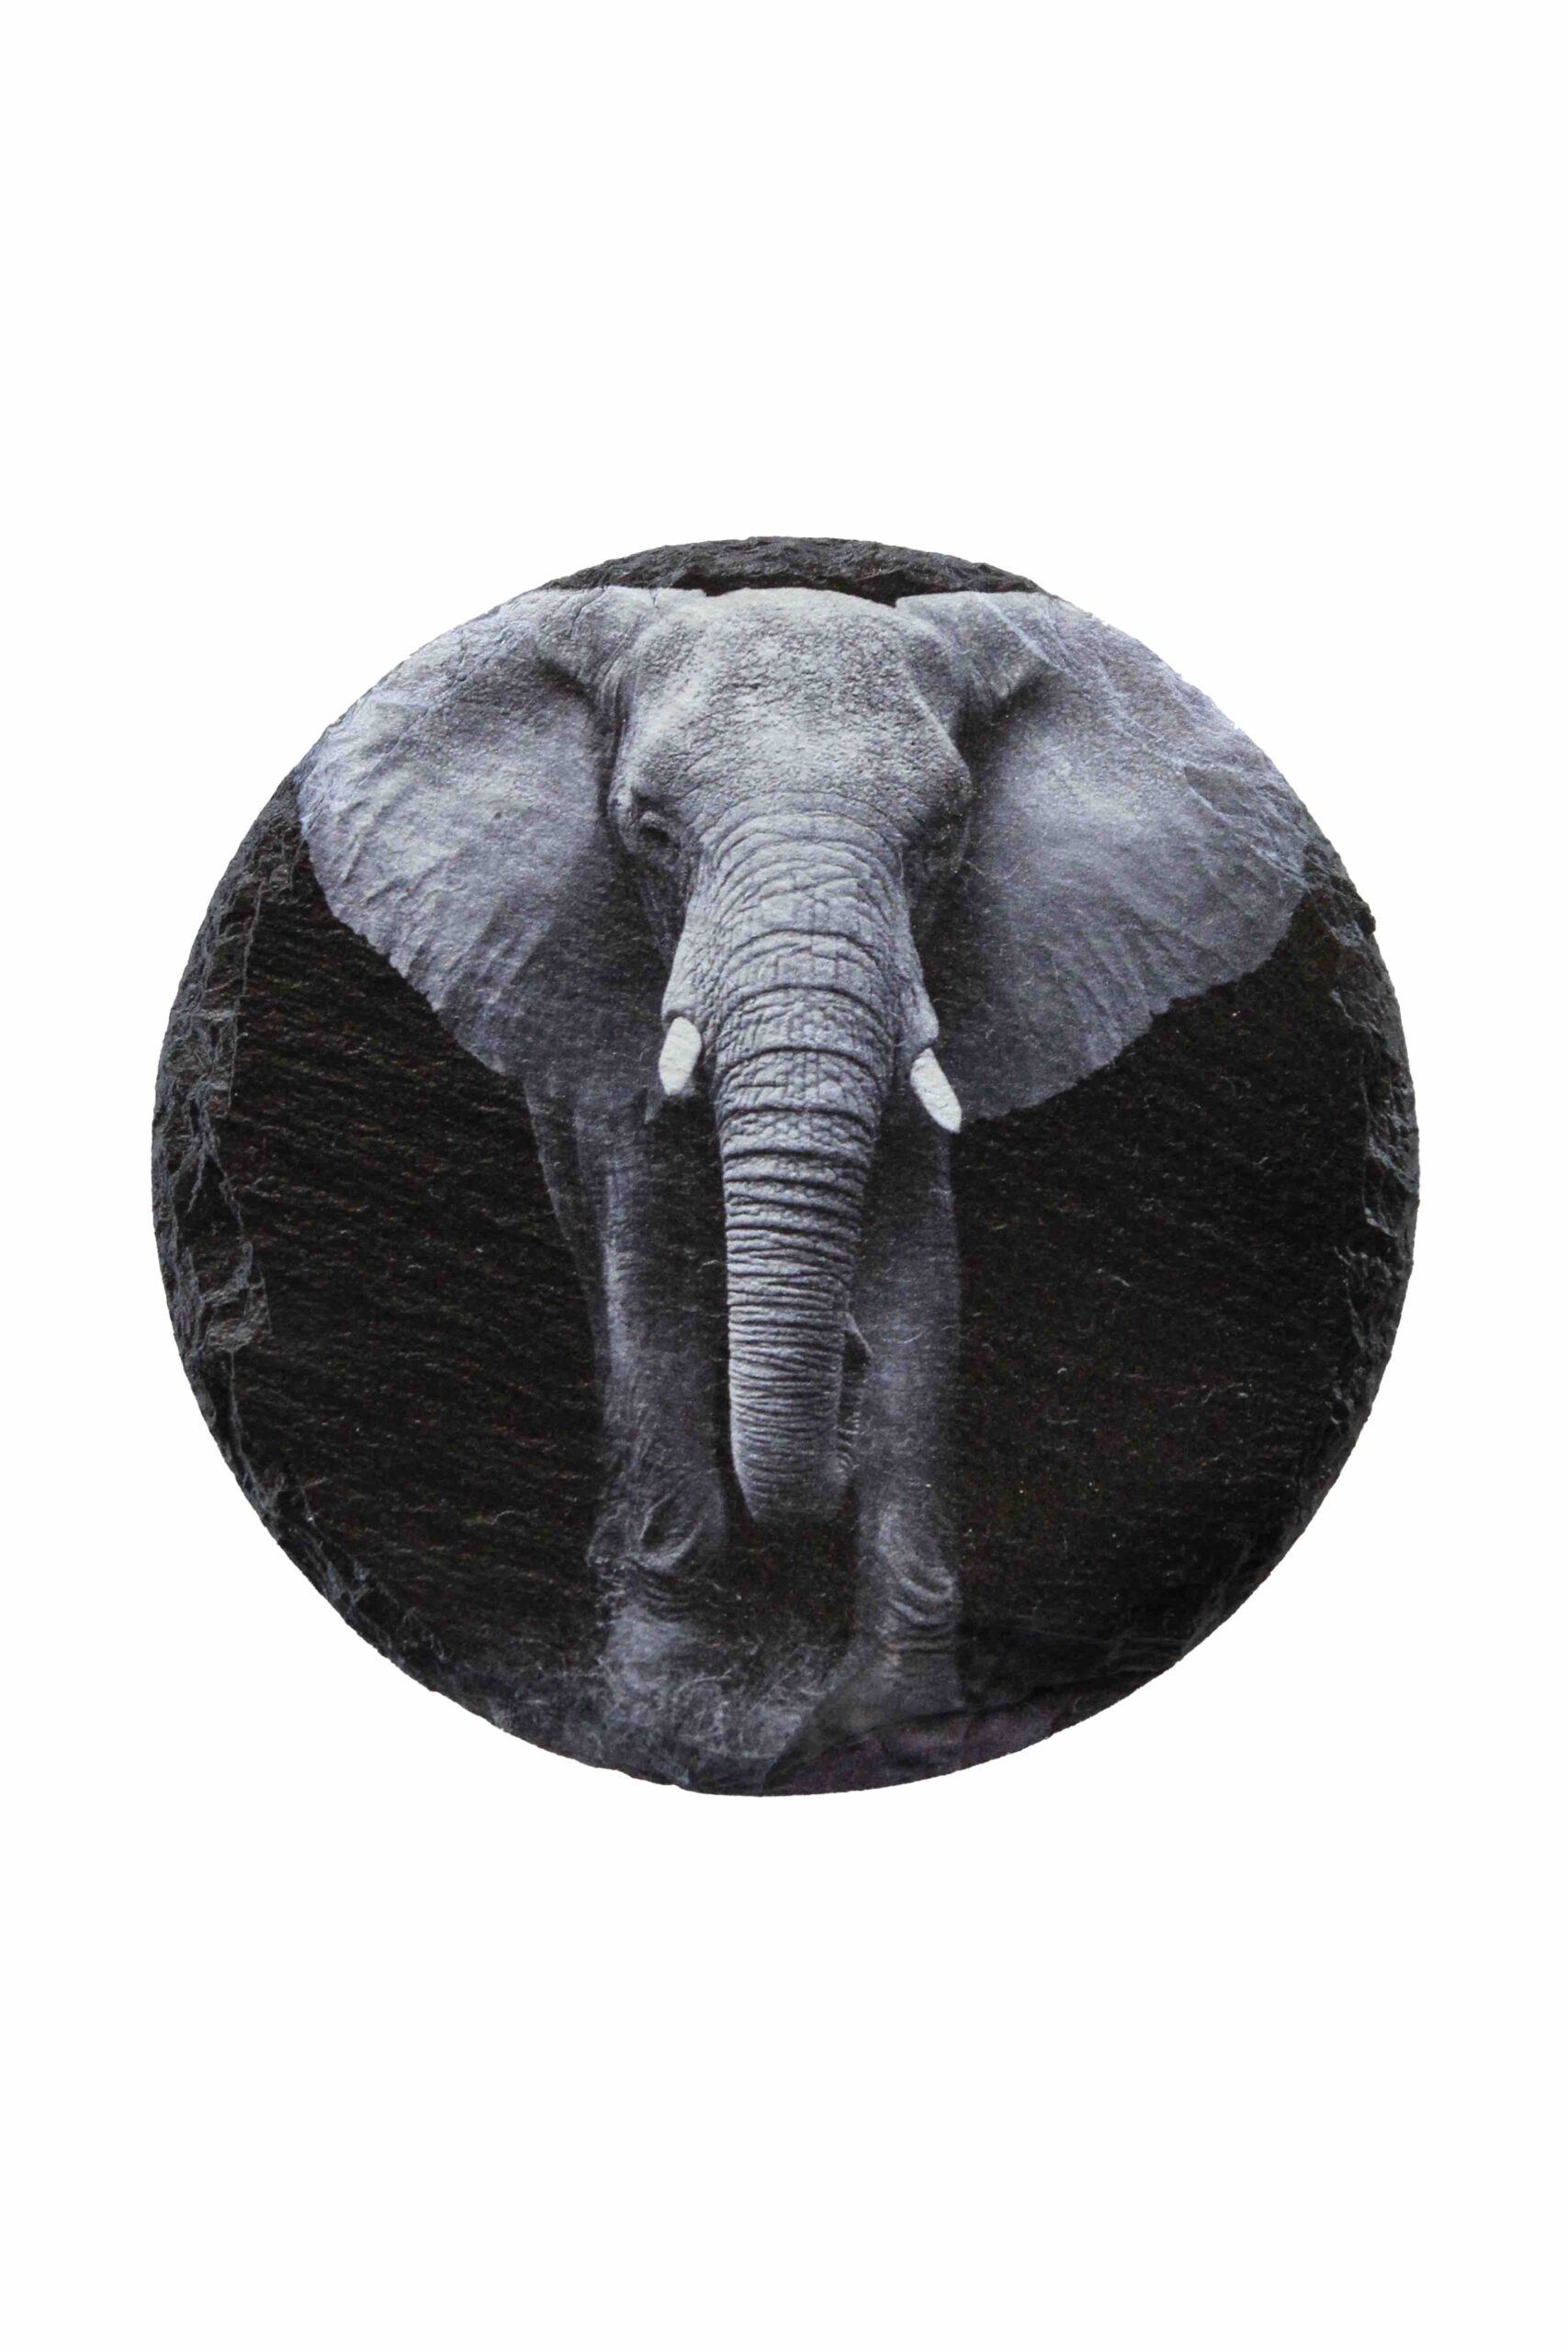 Leistenen onderzetter olifant zwartwit